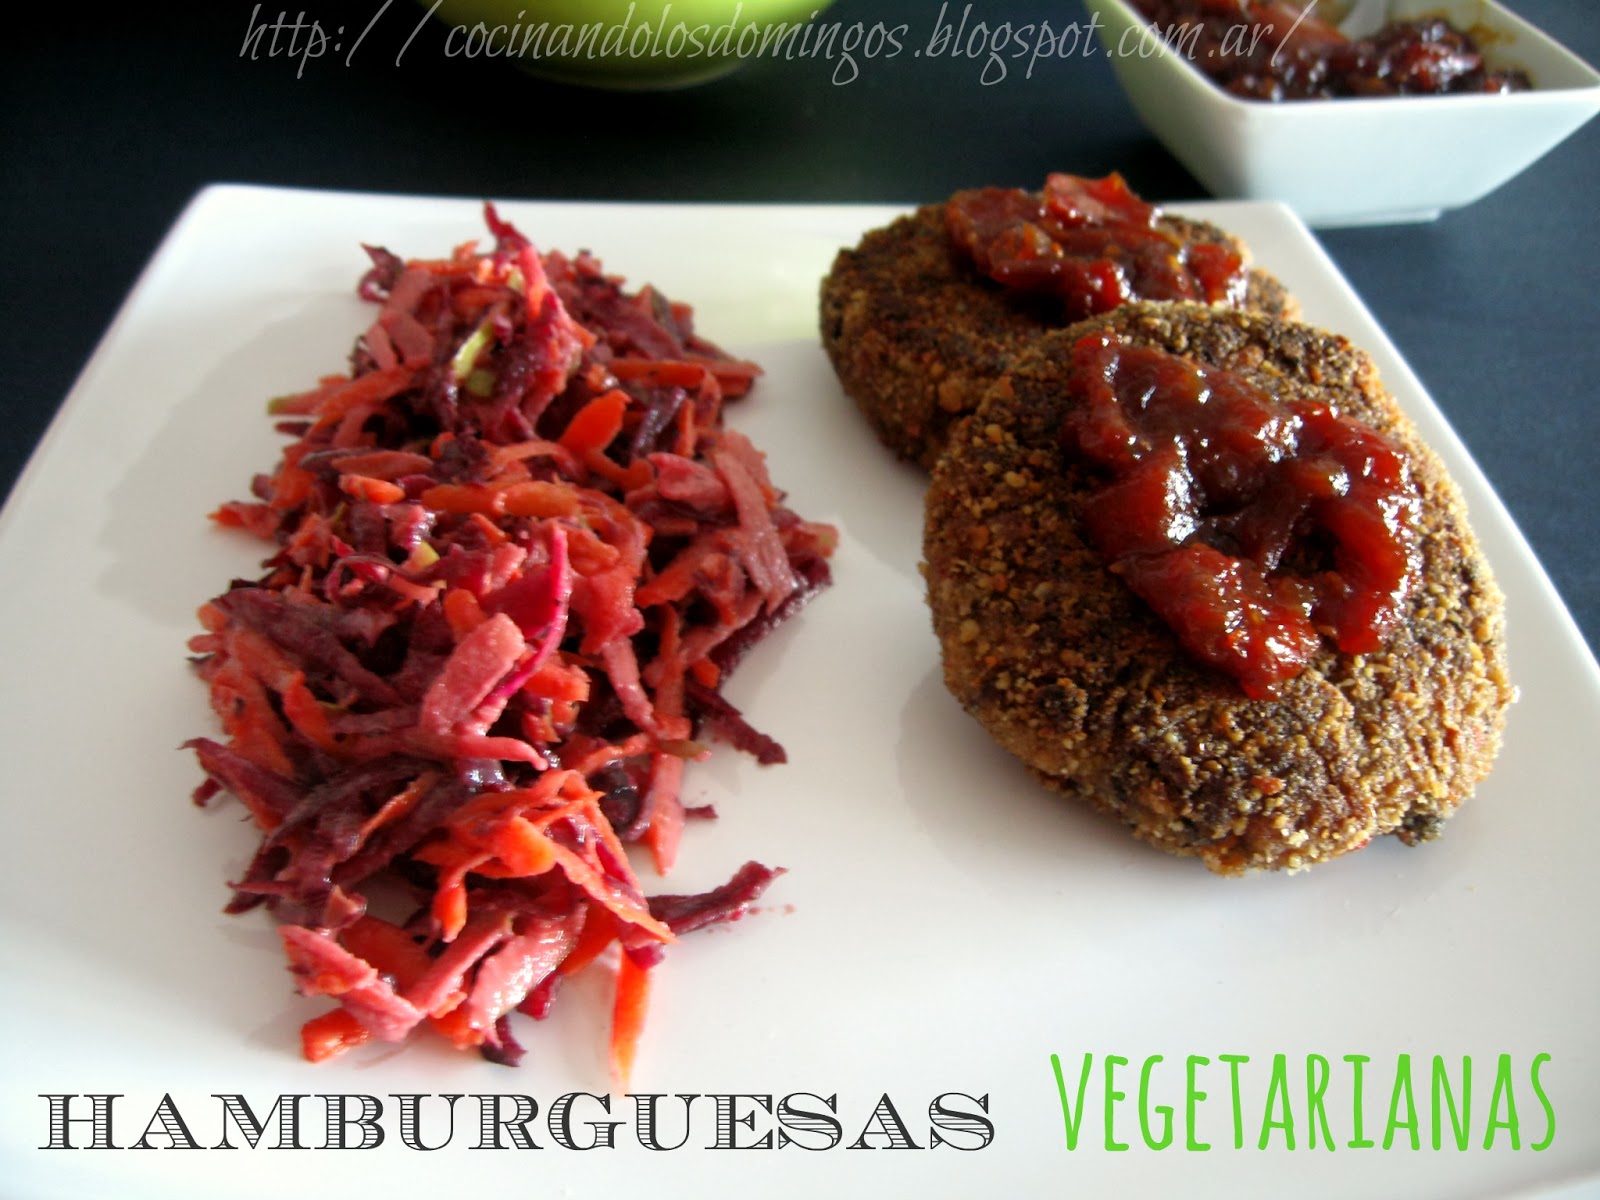 http://cocinandolosdomingos.blogspot.com.ar/2013/11/hamburguesas-vegetarianas-de-arroz-y.html